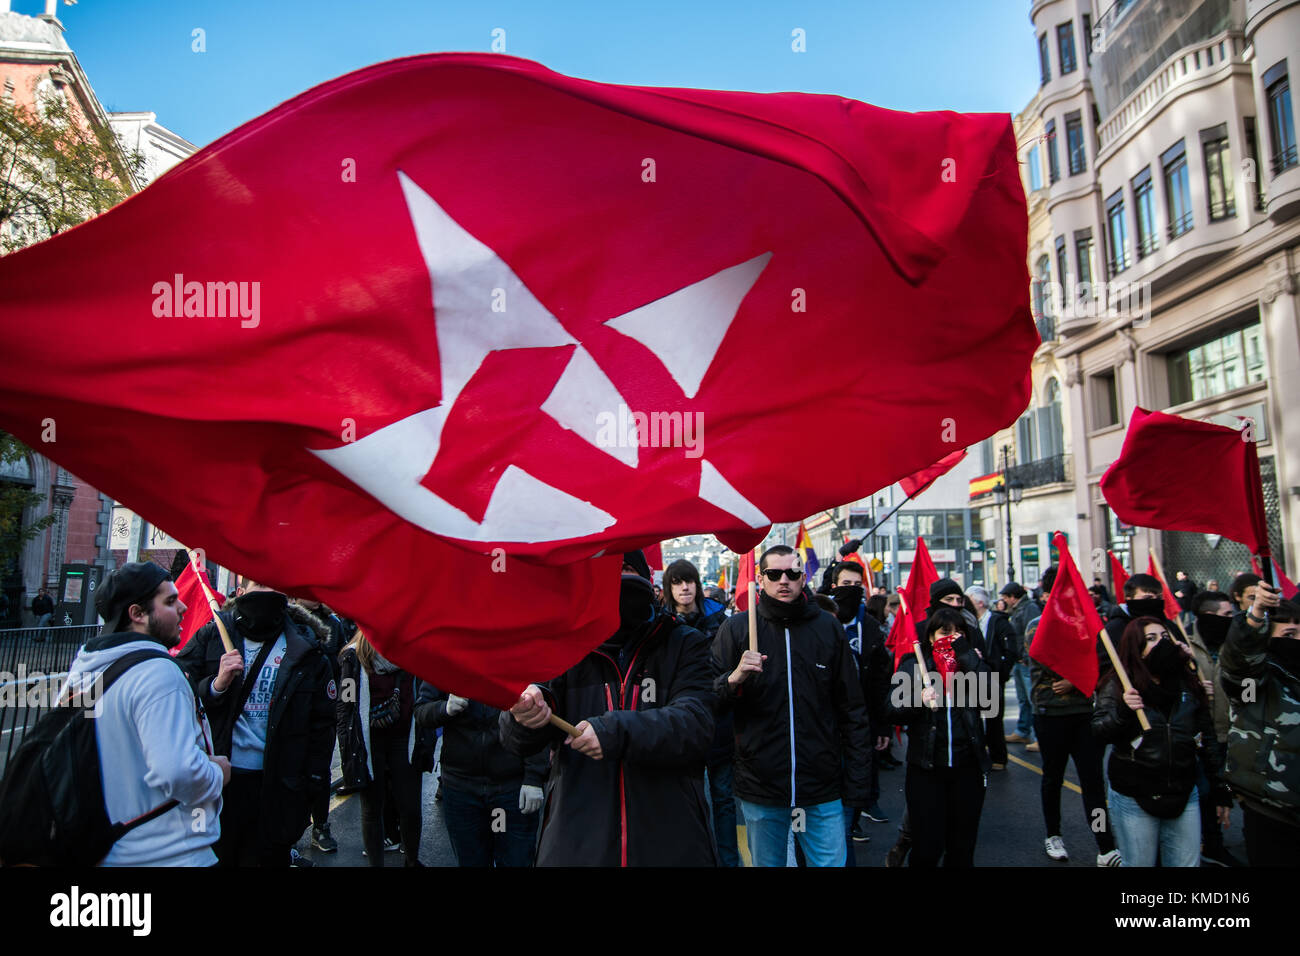 Madrid, Espagne. 6e dec 2017. un homme renonce à un drapeau soviétique exigeant une 3ème République au cours d'une manifestation contre la monarchie le jour du 39e anniversaire de la constitution espagnole à Madrid, Espagne. crédit : marcos del mazo/Alamy live news Banque D'Images